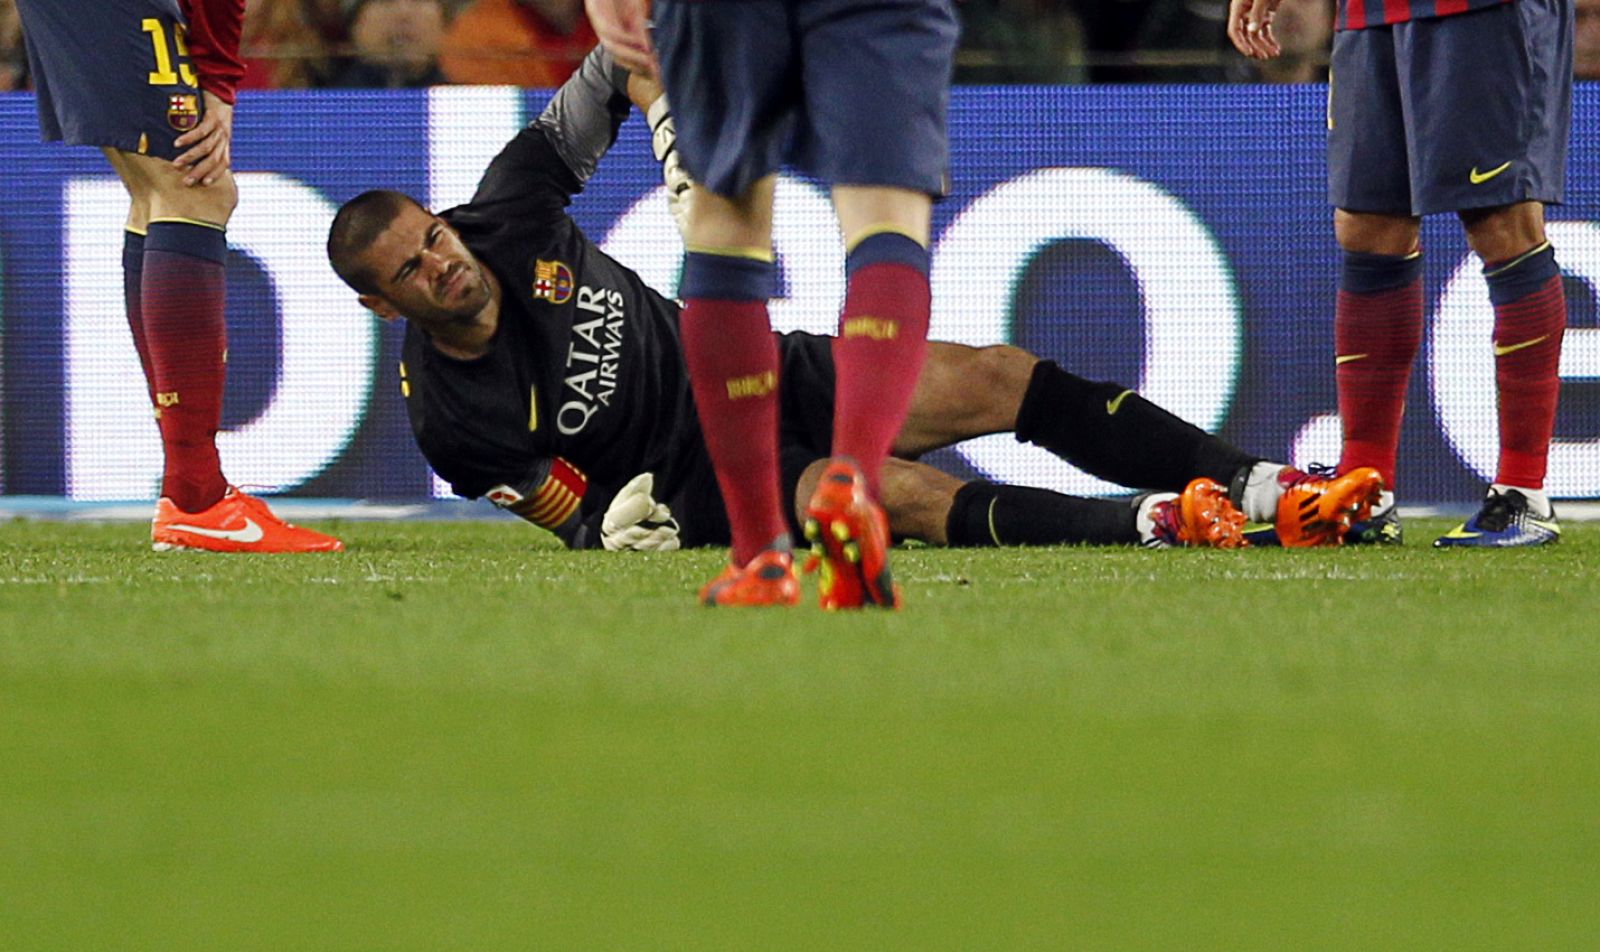 Valdés en el suelo tras la caída que le provocó la rotura de ligamento cruzado anterior.